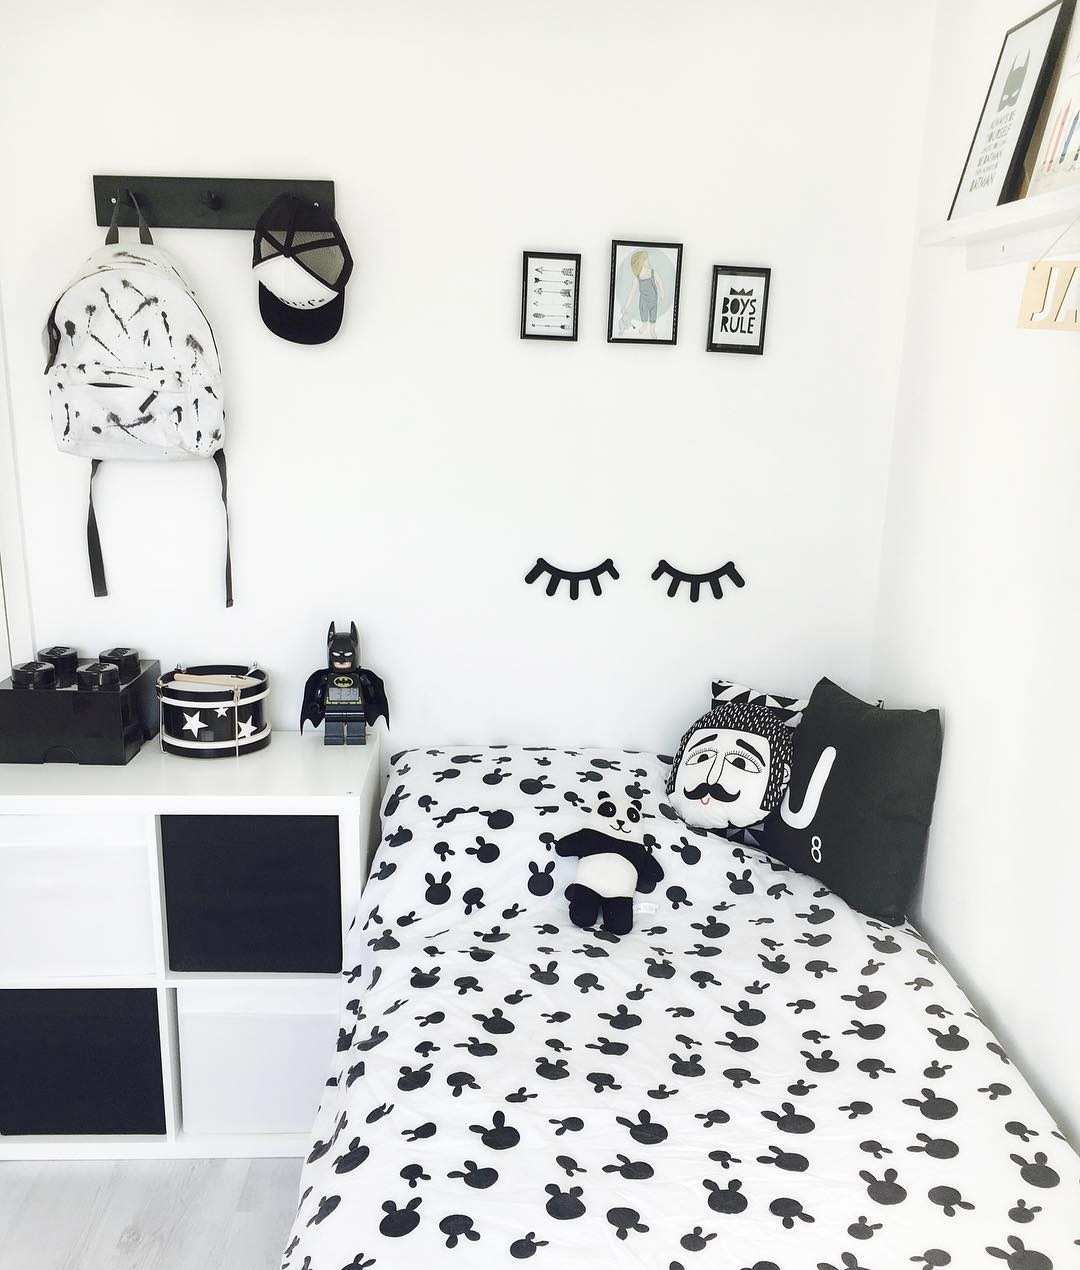 배경 dinding 카마르 hitam putih,하얀,검정색과 흰색,검정,흑백 사진,침실